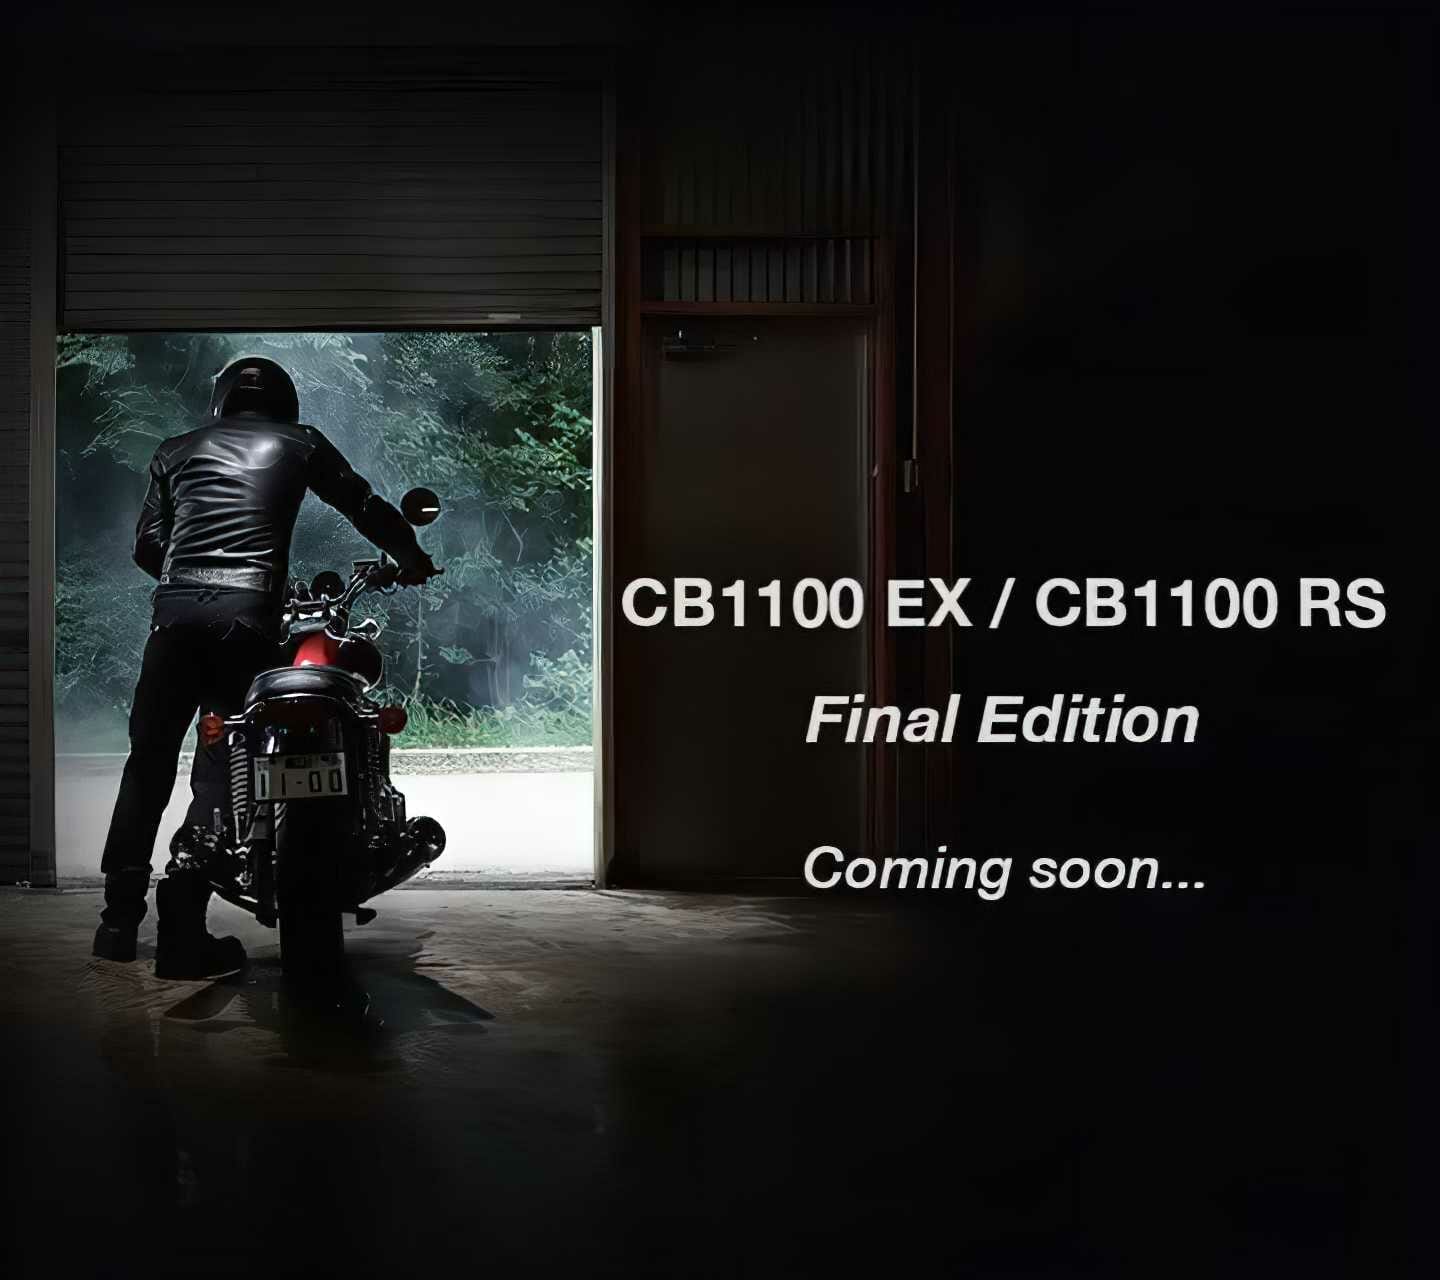 Honda CB1100 Final Edition – auch das Ende des luftgekühlten Vierzylinders?
- auch in der MOTORRAD NACHRICHTEN APP